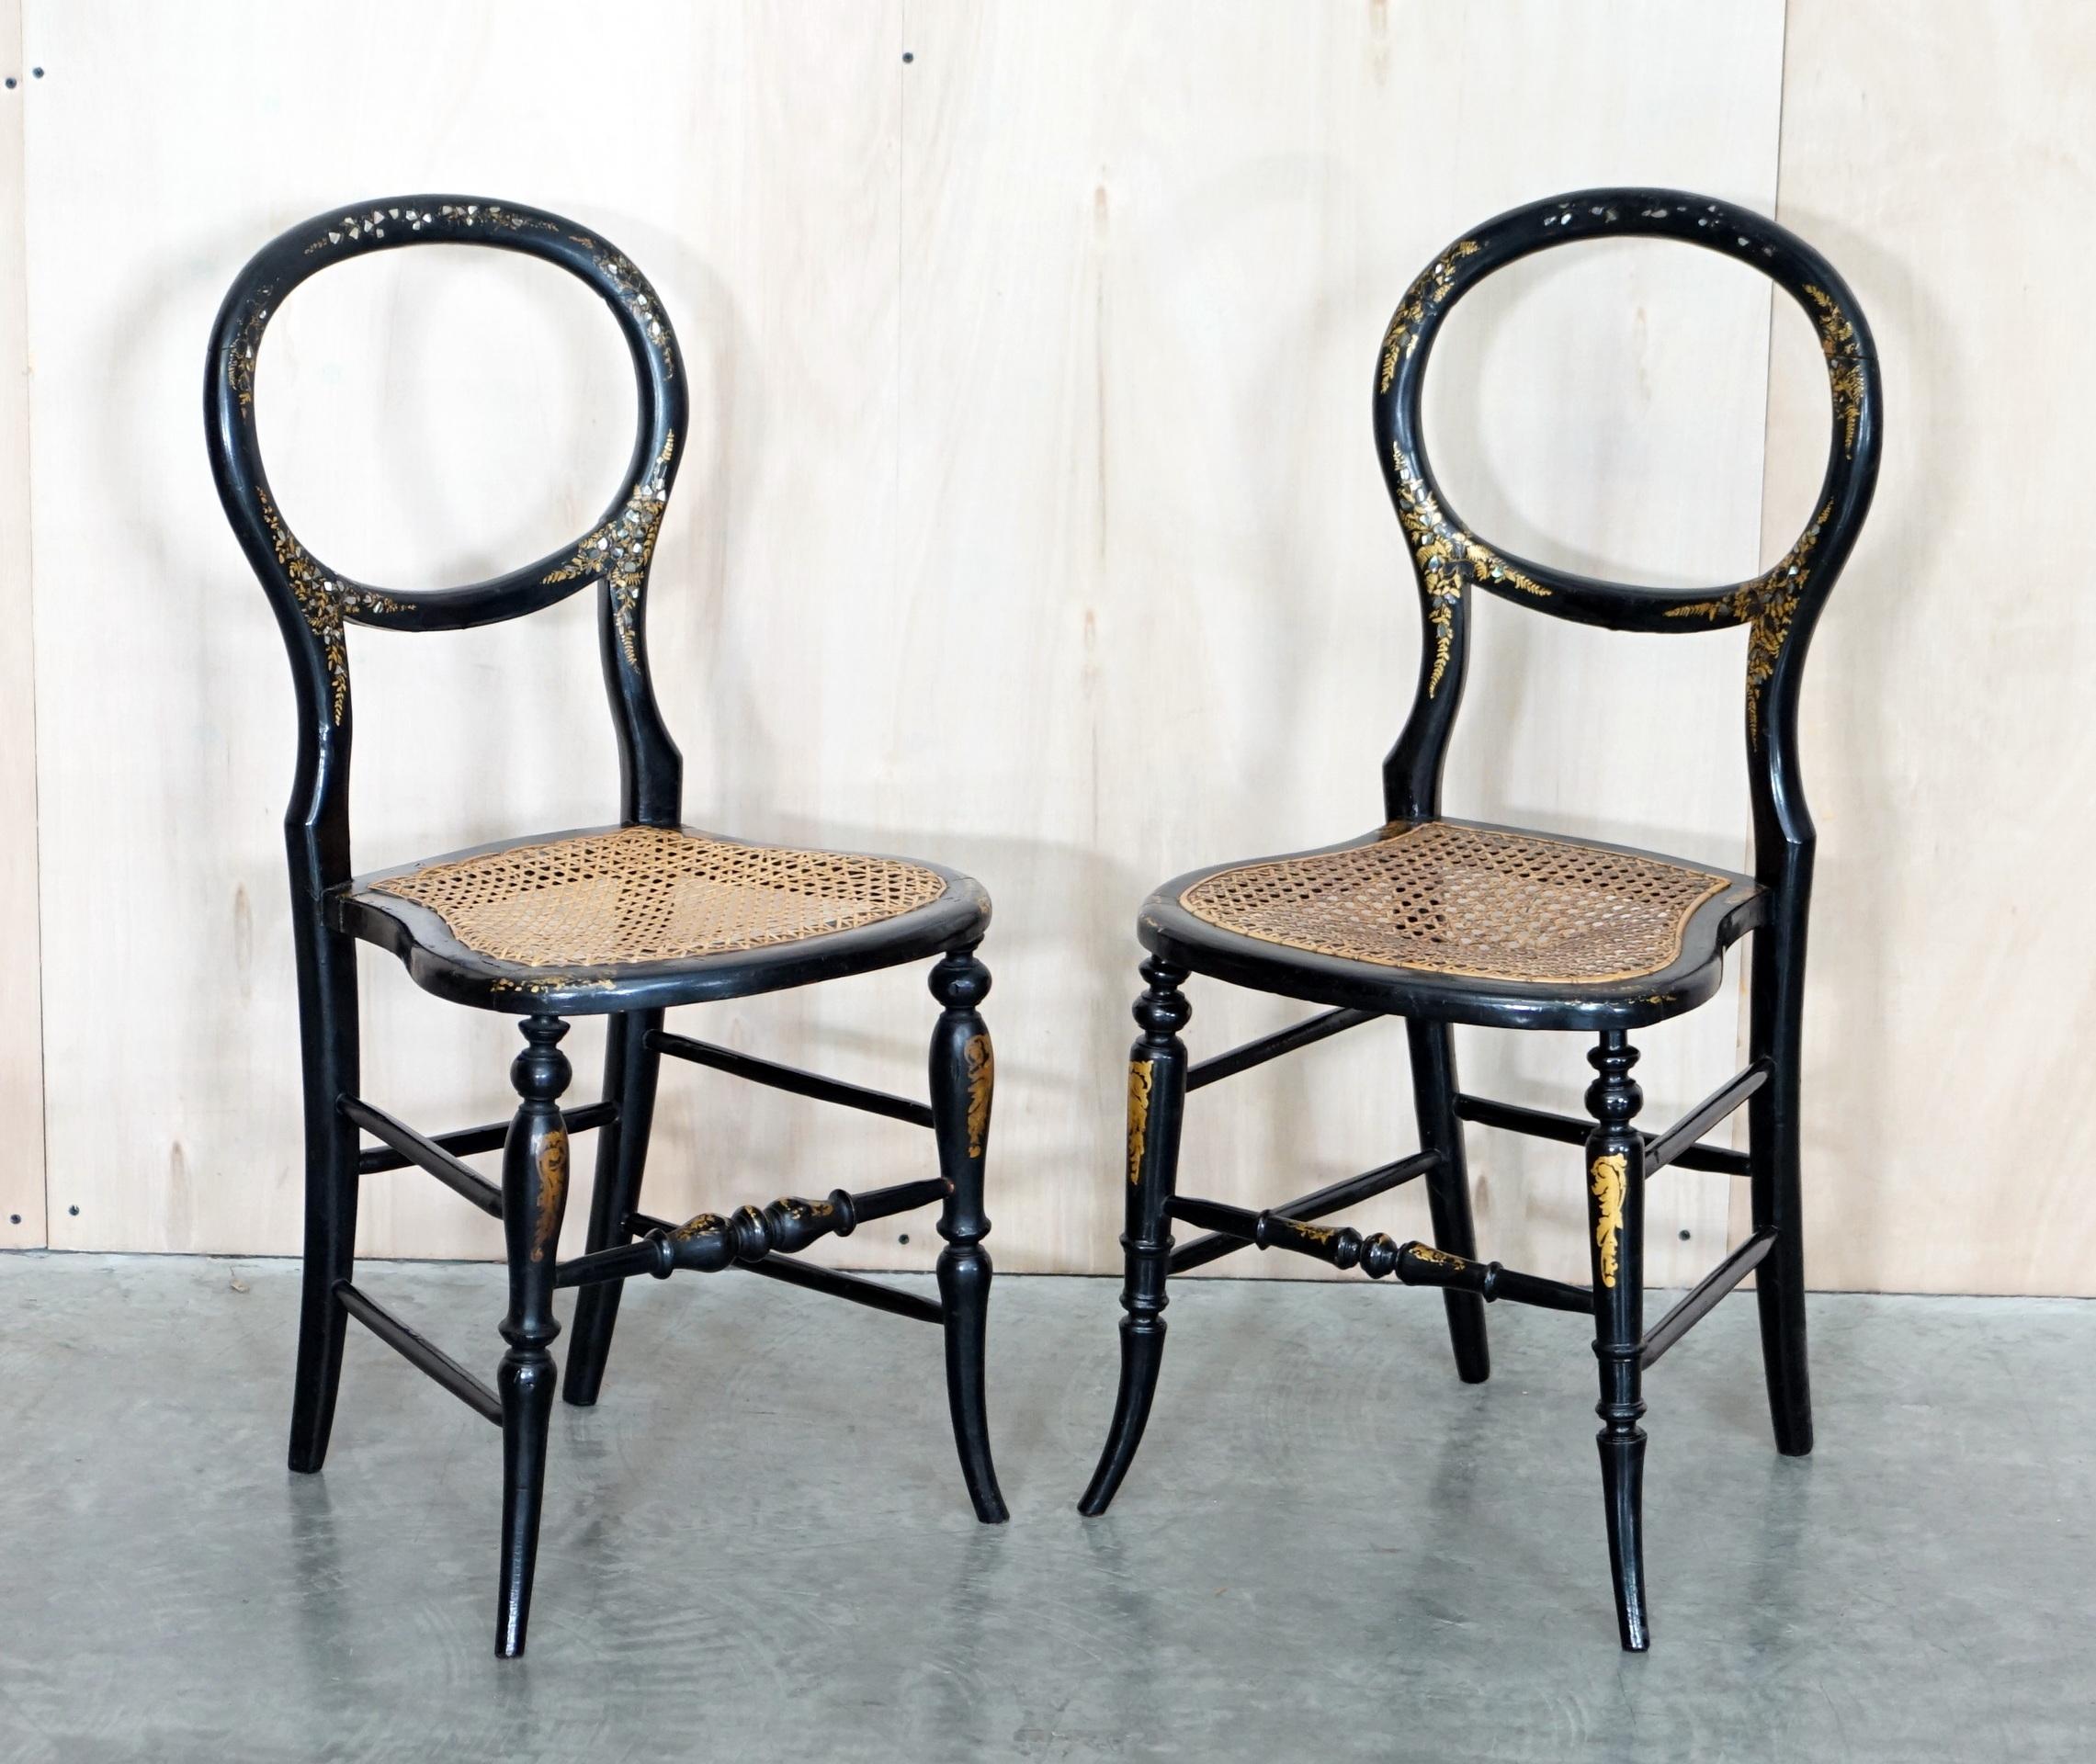 Wir freuen uns, dieses hübsche Paar originaler Regency-Stühle (ca. 1810-1820) aus Ebenholz mit Perlmutt-Intarsien und einem passenden Tablett zum Verkauf anbieten zu können 

Eine sehr gut aussehende, gut gemachte und dekorative Garnitur.